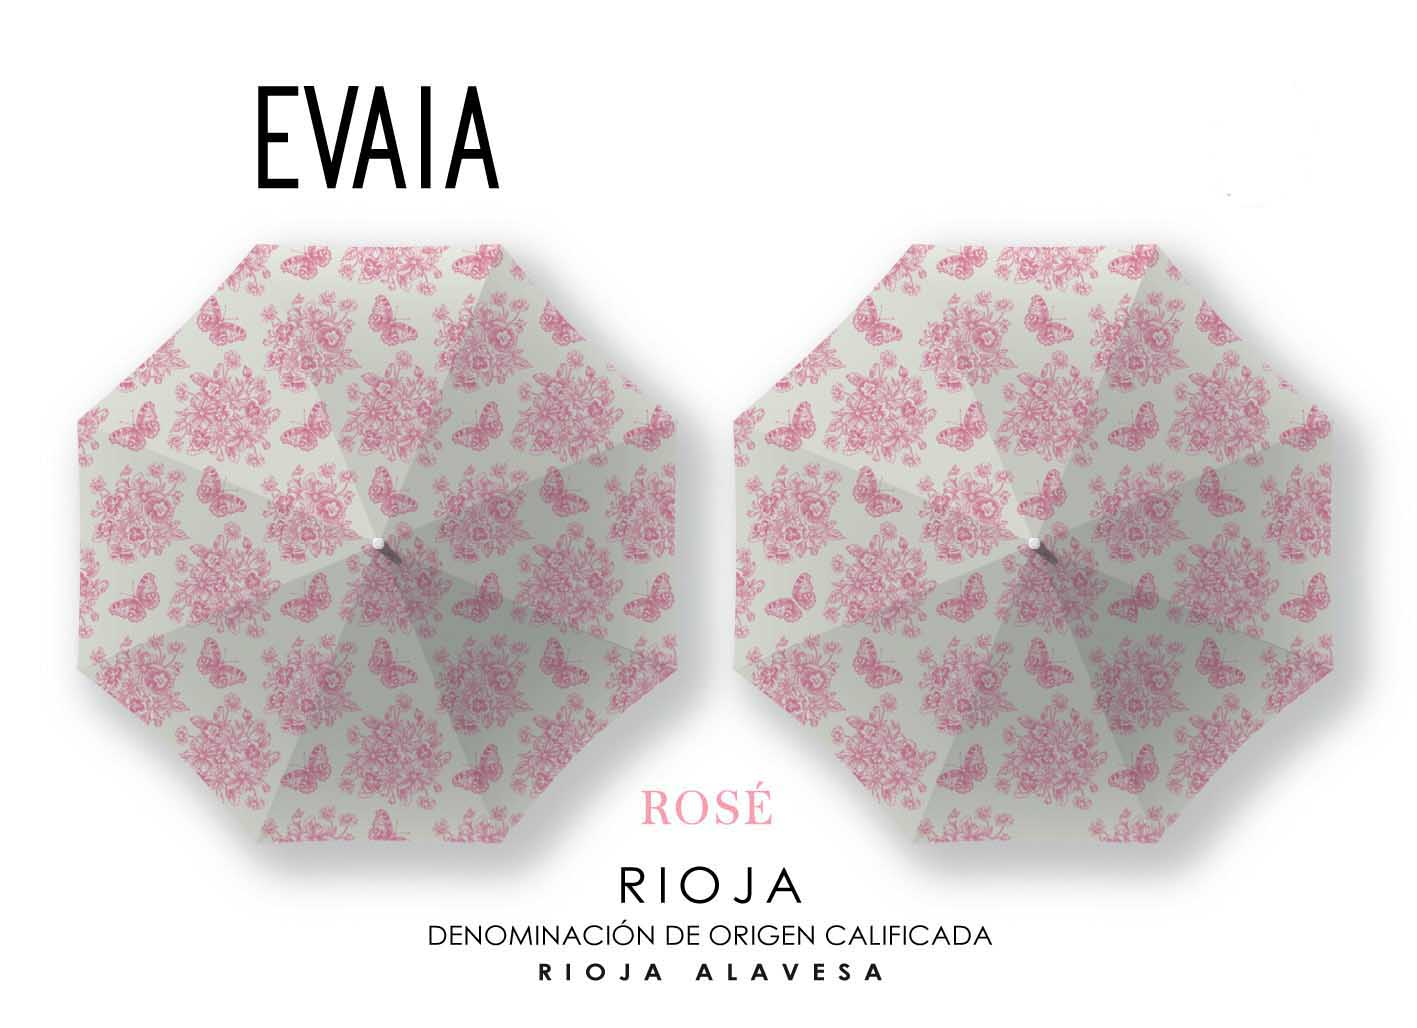 Evaia - Rose label